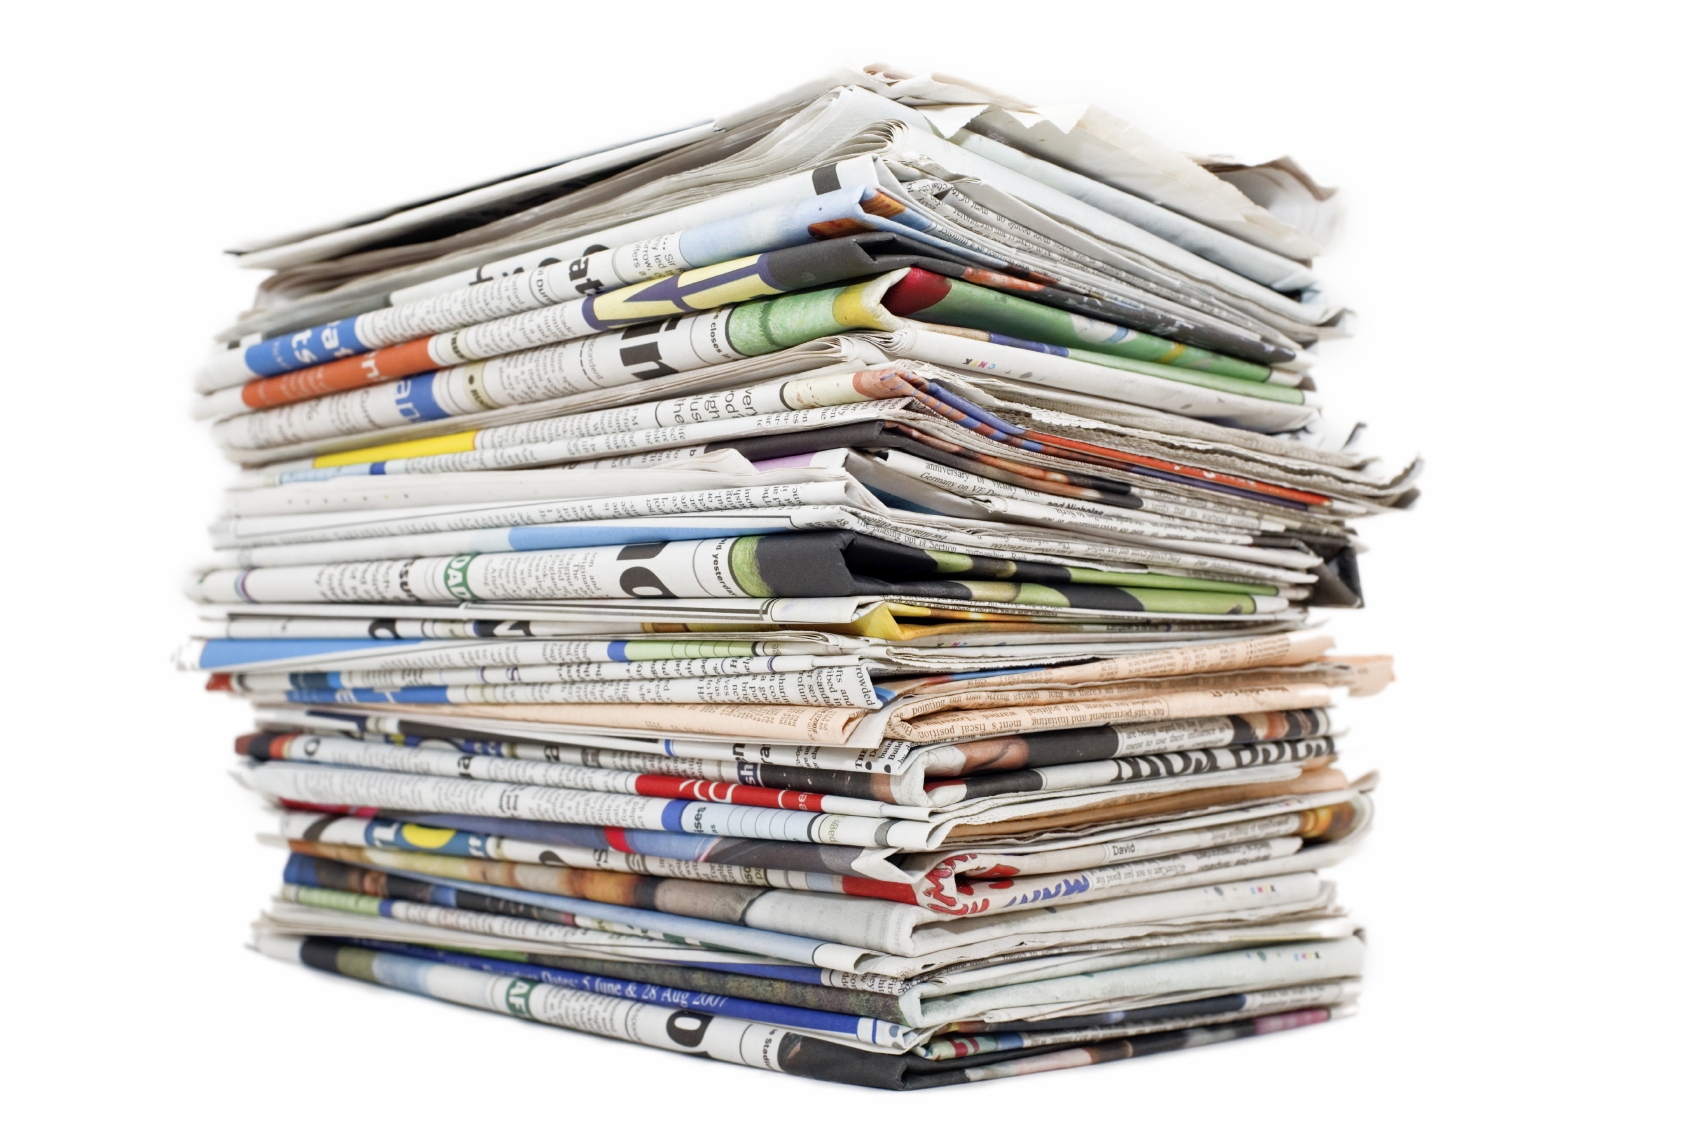 Μείωση της κυκλοφορίας των εφημερίδων σε ολόκληρο στον κόσμο